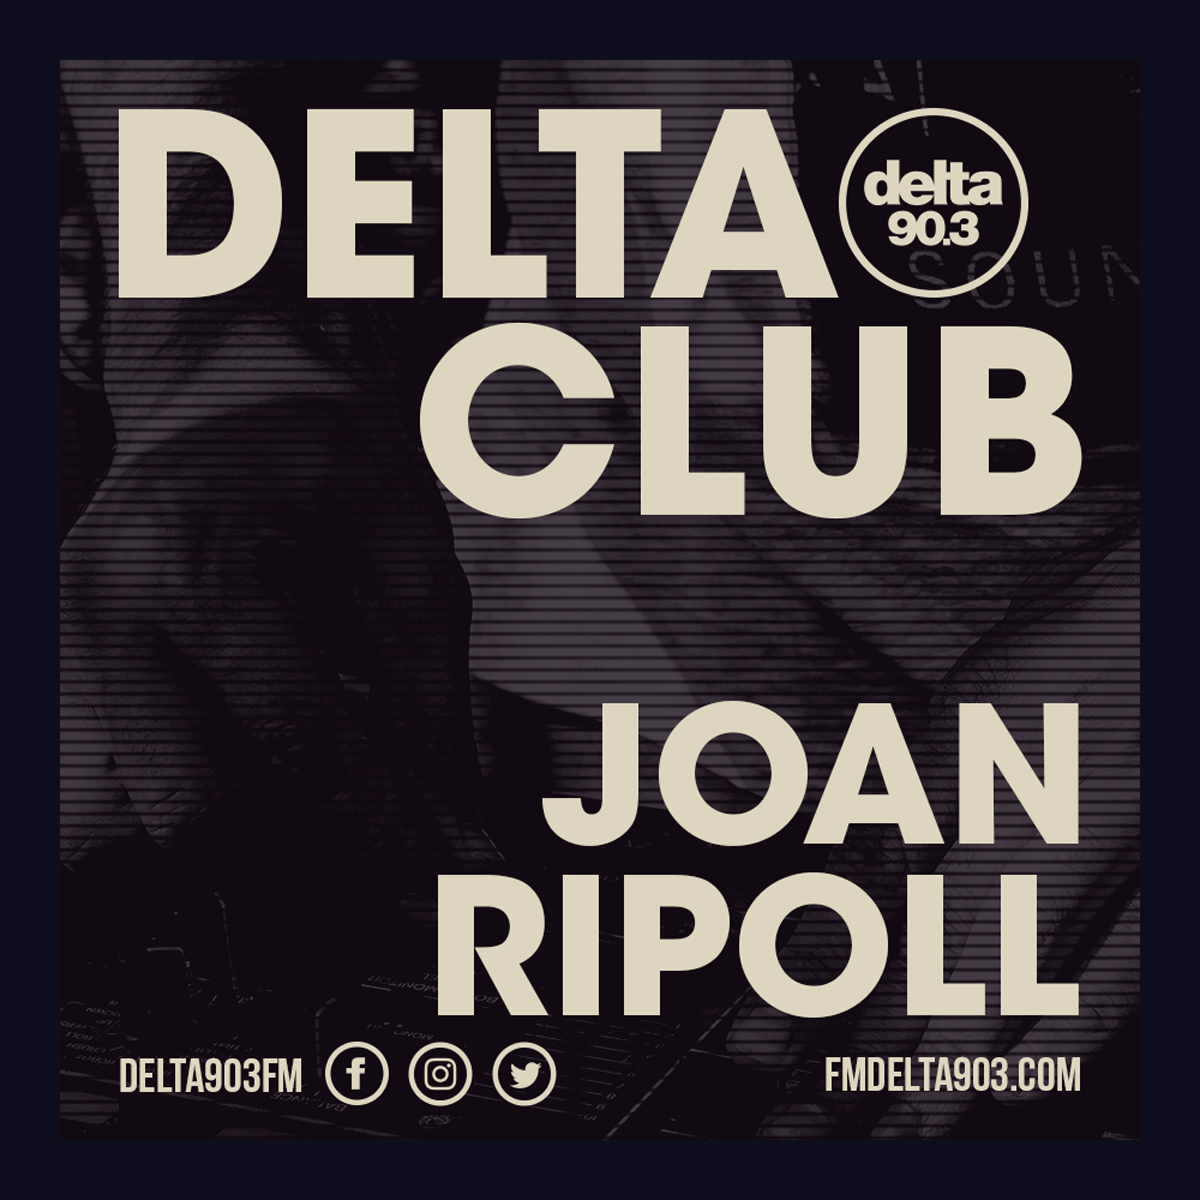 Delta Podcasts - Delta Club presents Joan Ripoll (27.06.2018)